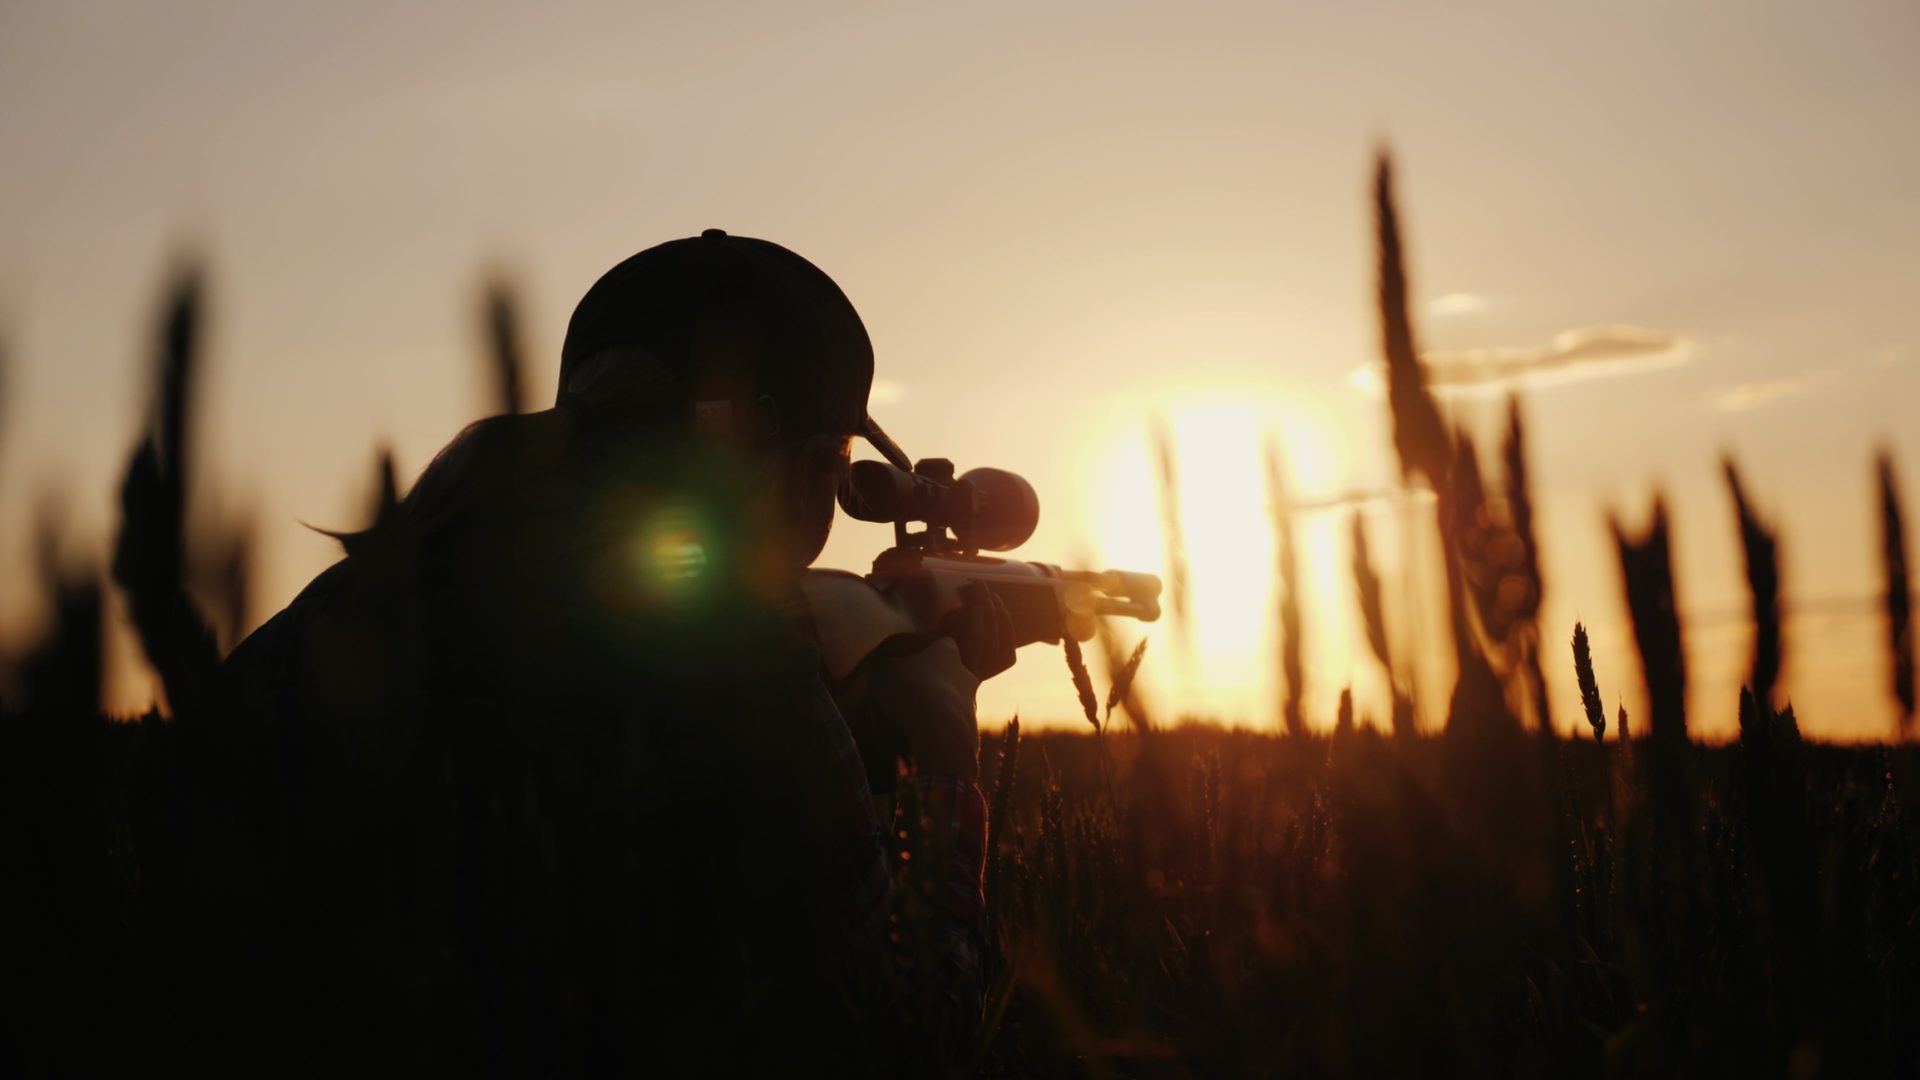 PJ Militar investiga caso de caça ilegal no campo de tiro de Alcochete